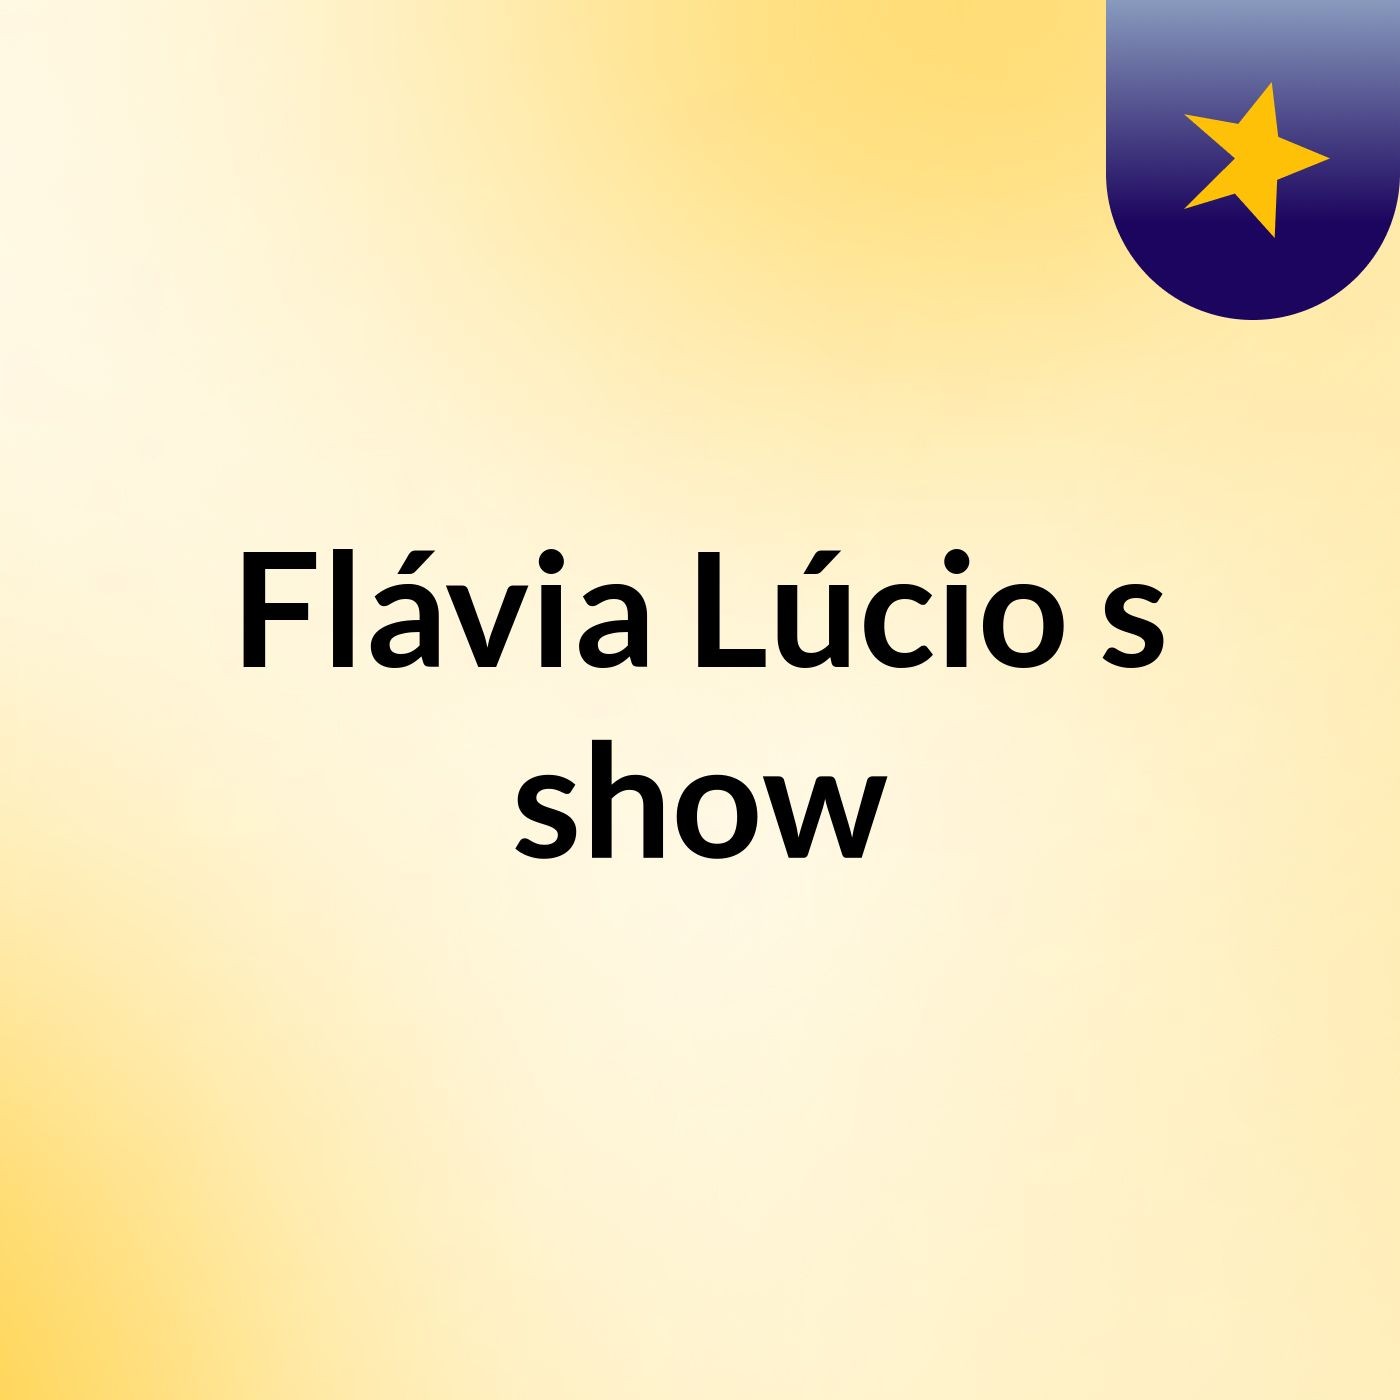 Flávia Lúcio's show